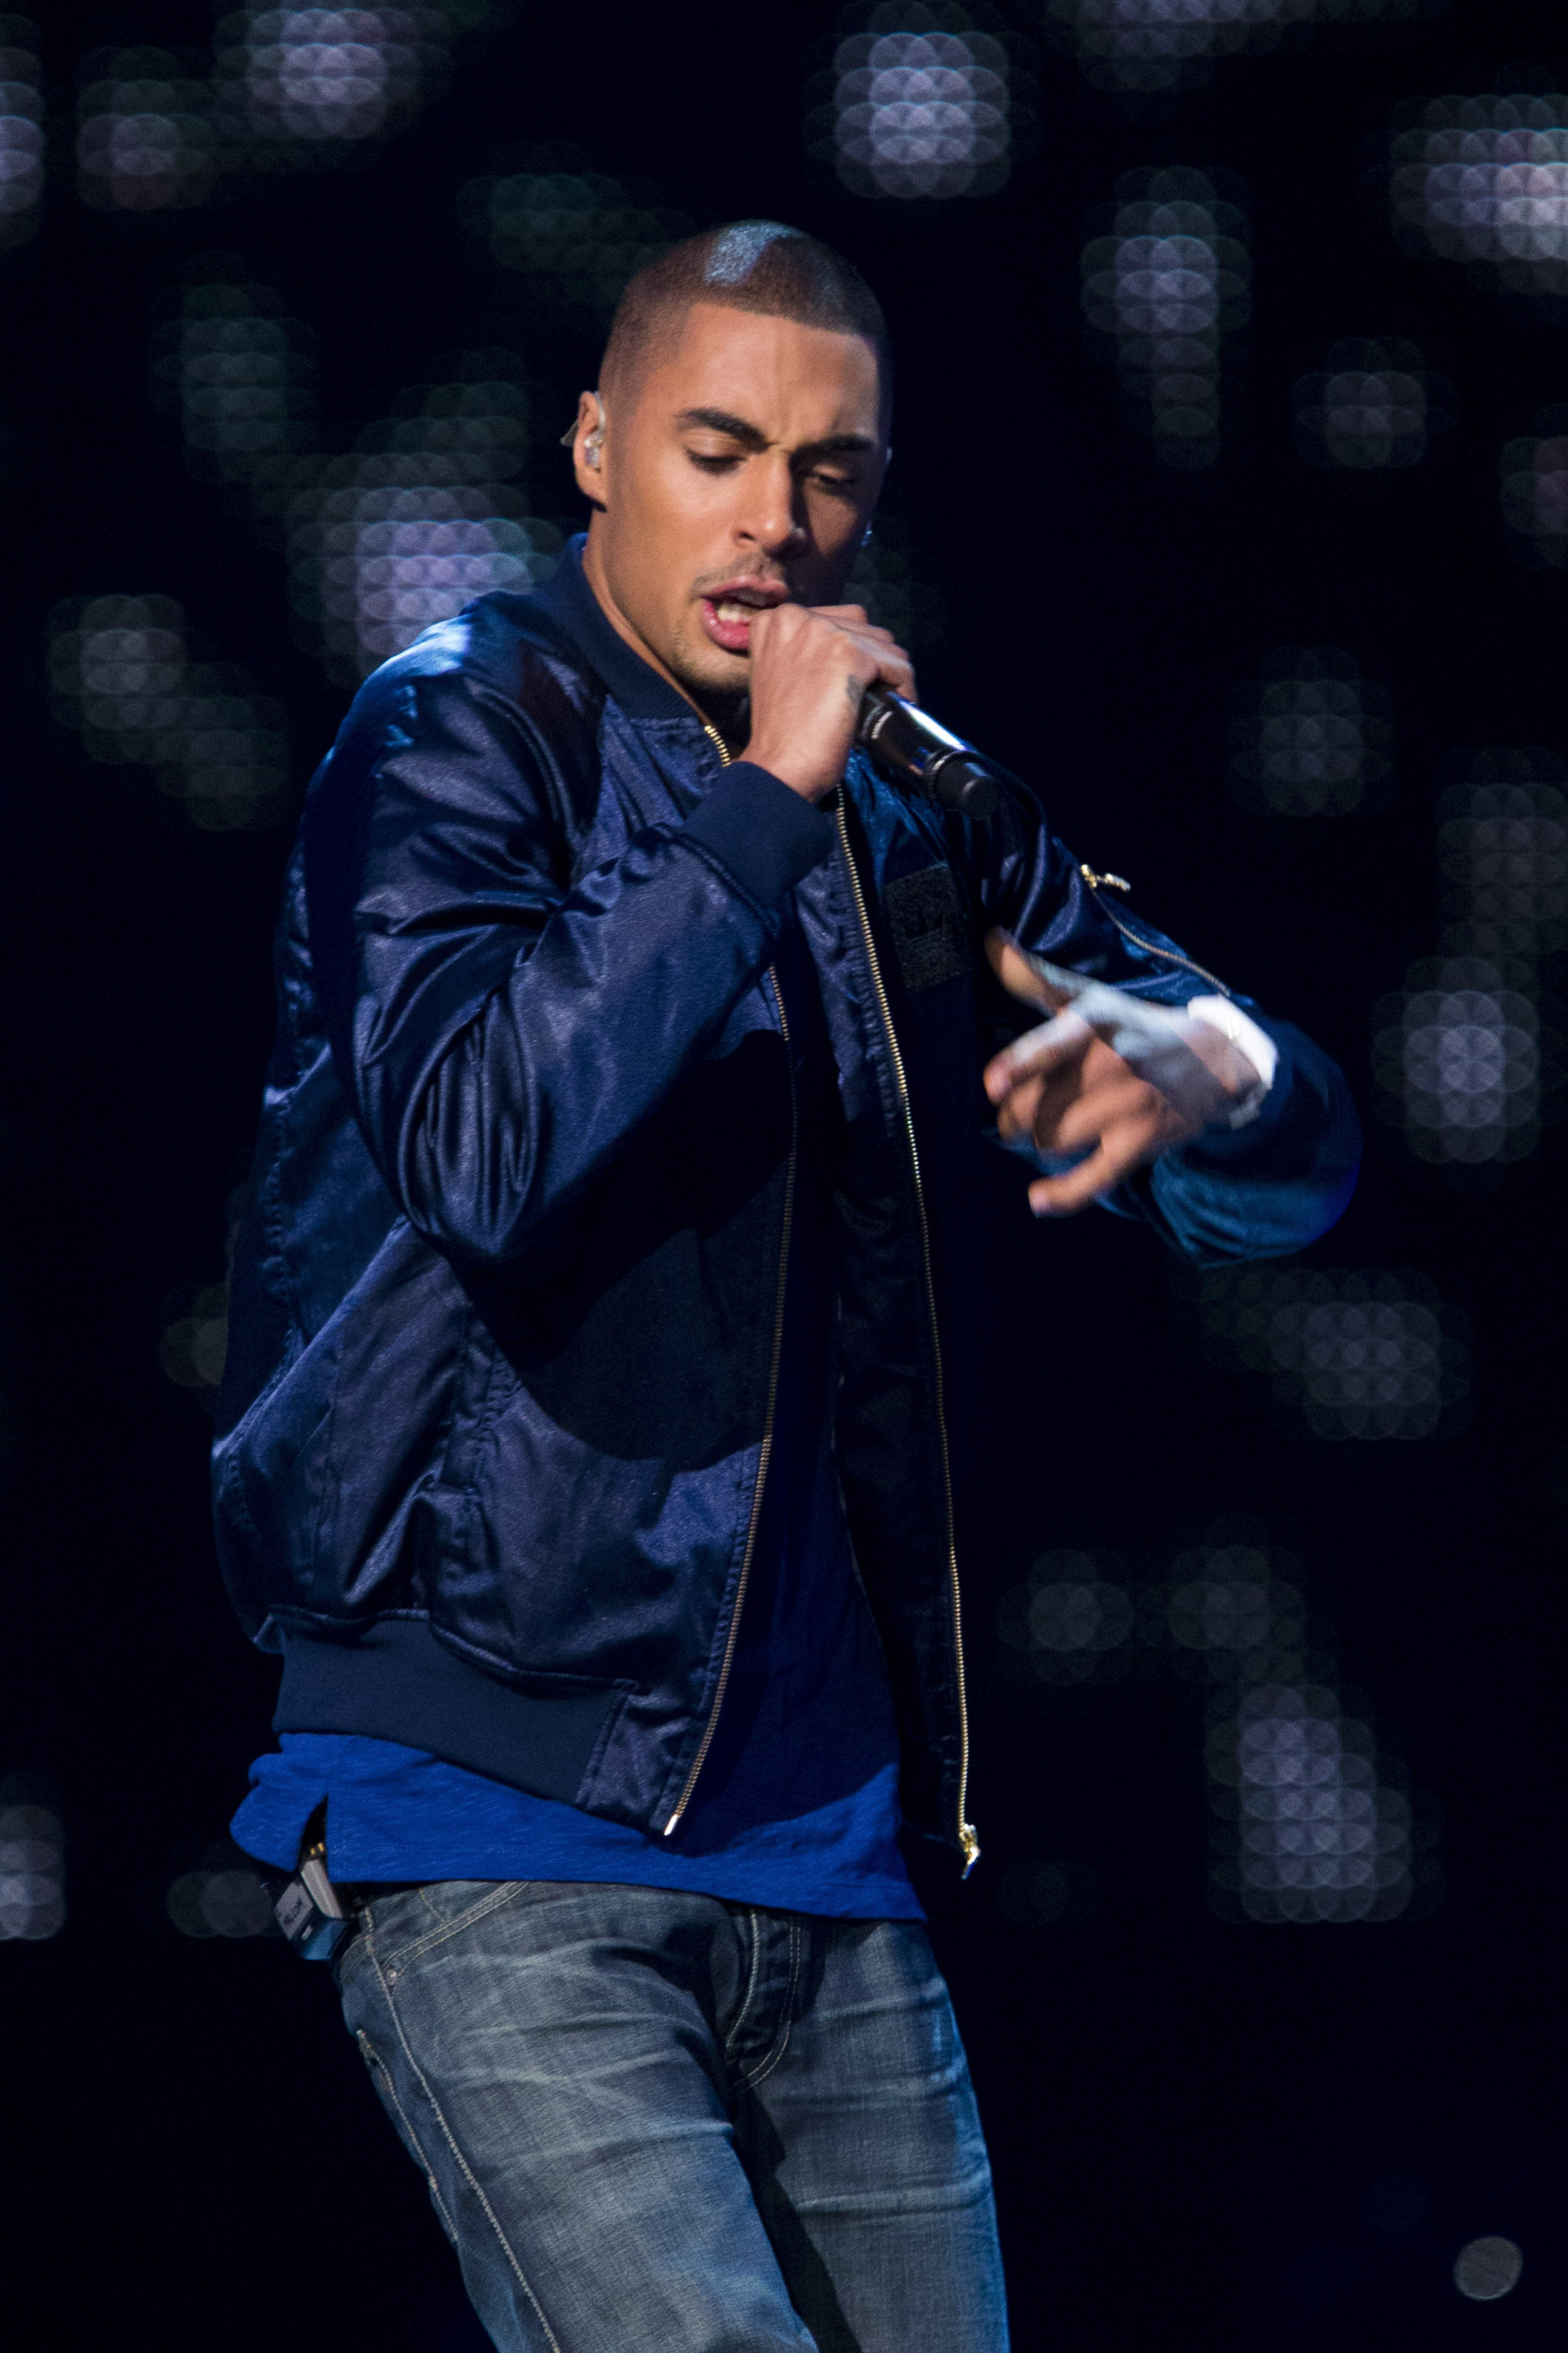 Malcom Brandin, född 1990, gjorde sig känd som ”Malcom B” i X-Factor där han tog Sverige med storm med sin hiphop. Enligt Skatteverket tjänade Malcom 600 kronor förra året men efter medverkan i X-Factor lär plånboken fyllas desto mer. 